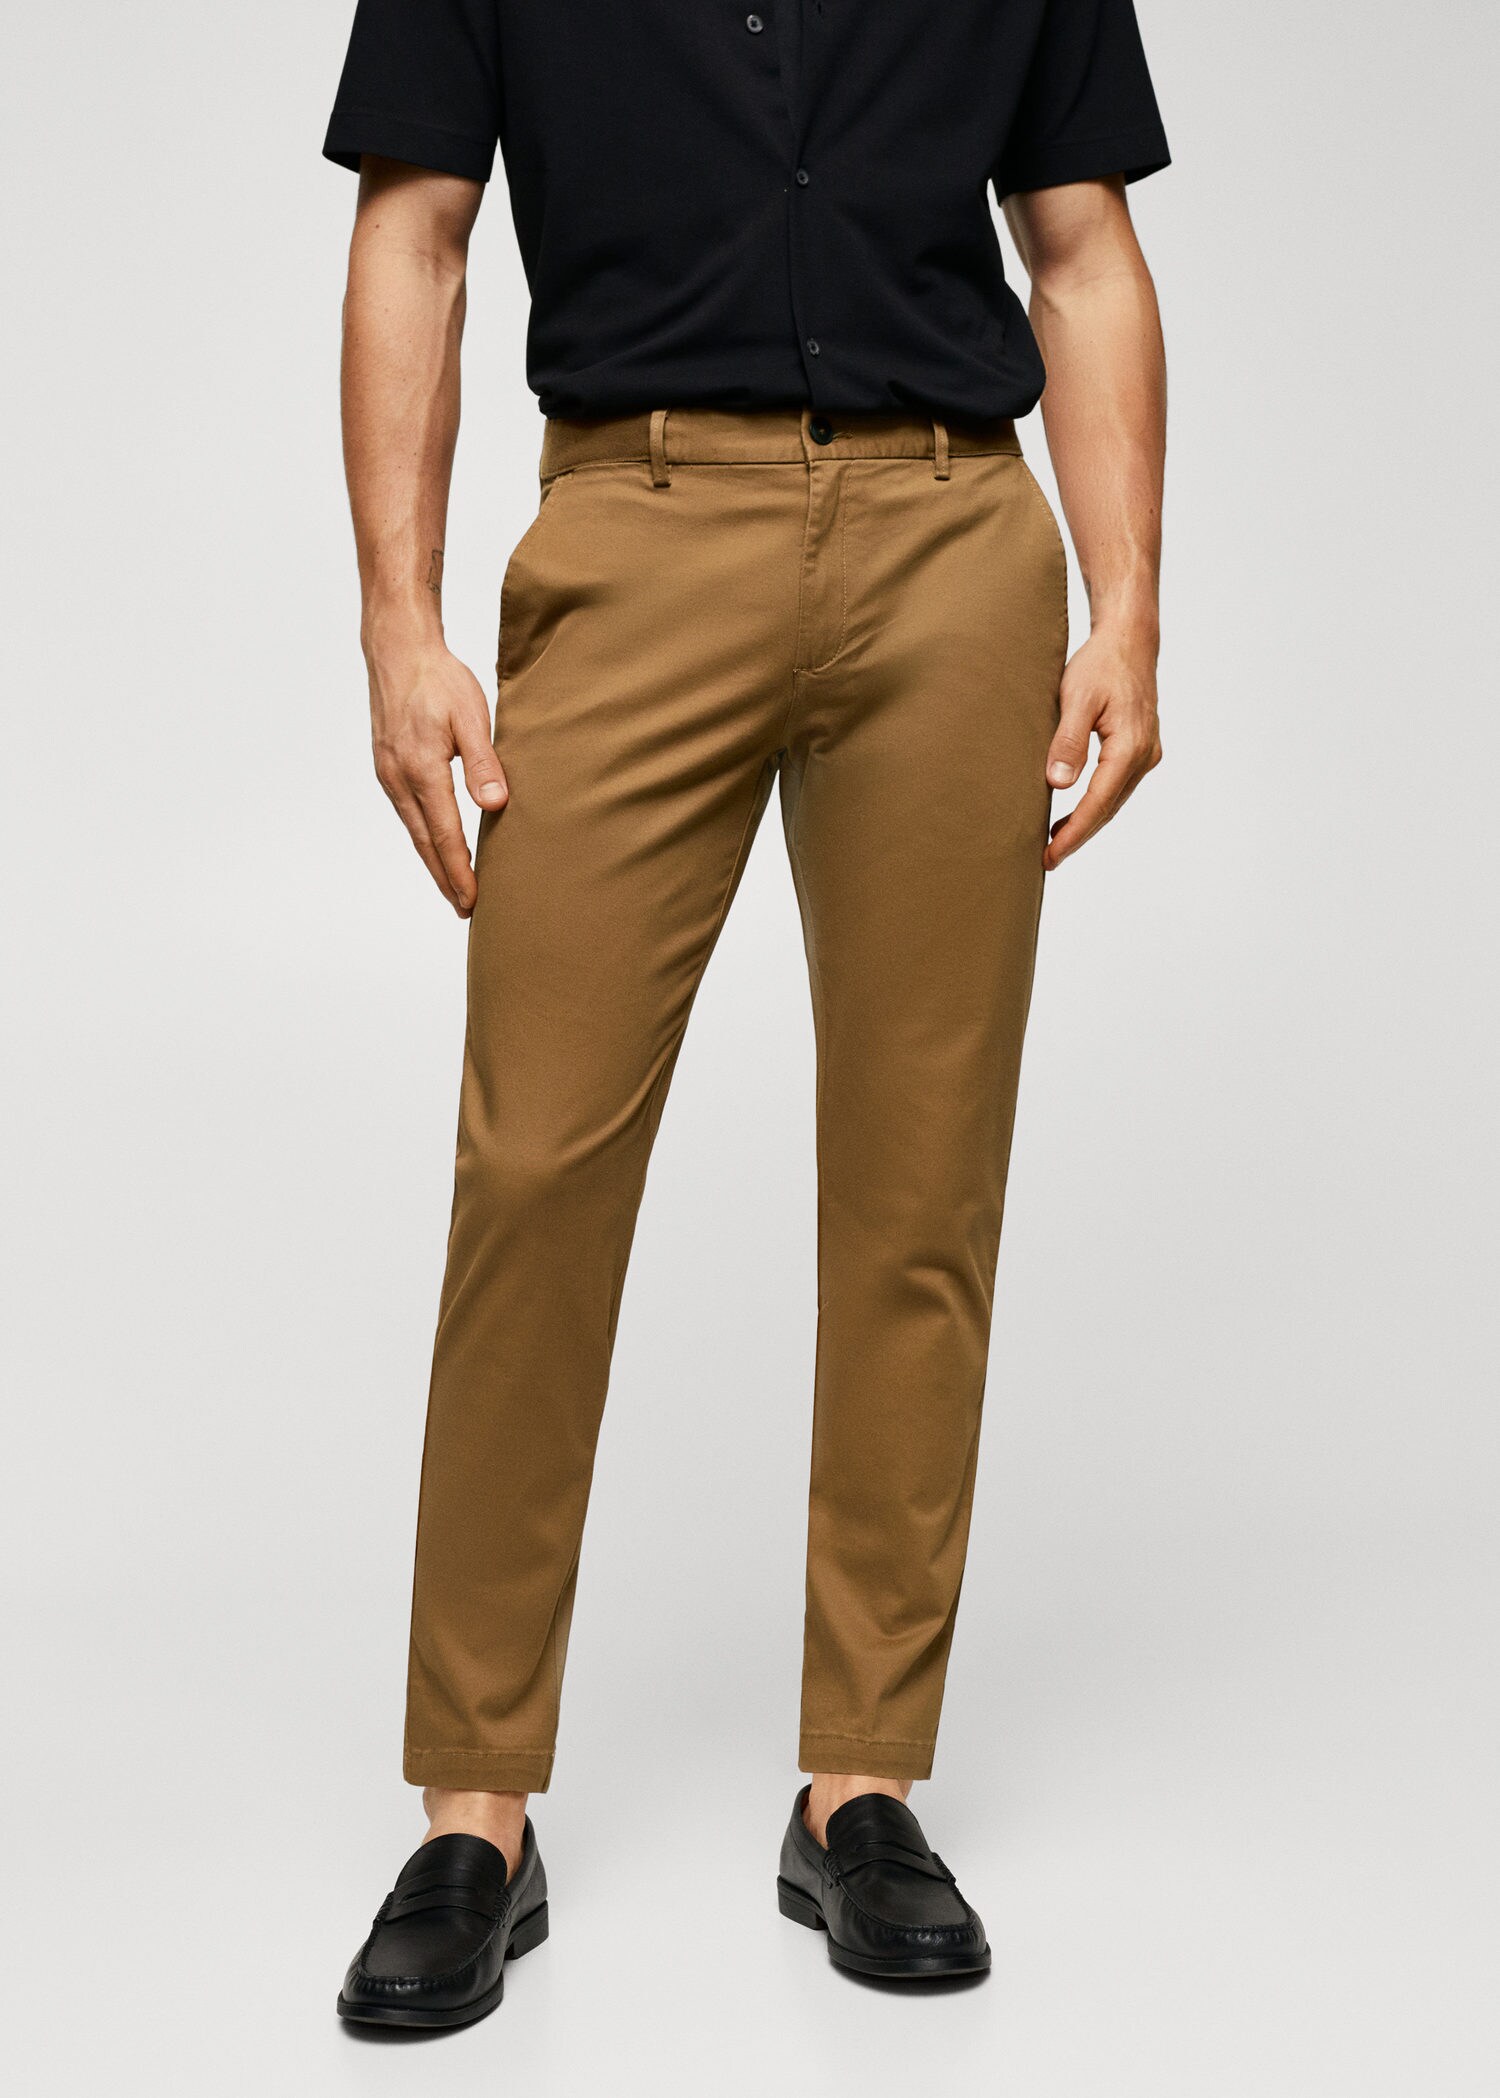 Buy Men's Cotton Lounge Wear Wear Tapered Fit Pants|Cottonworld